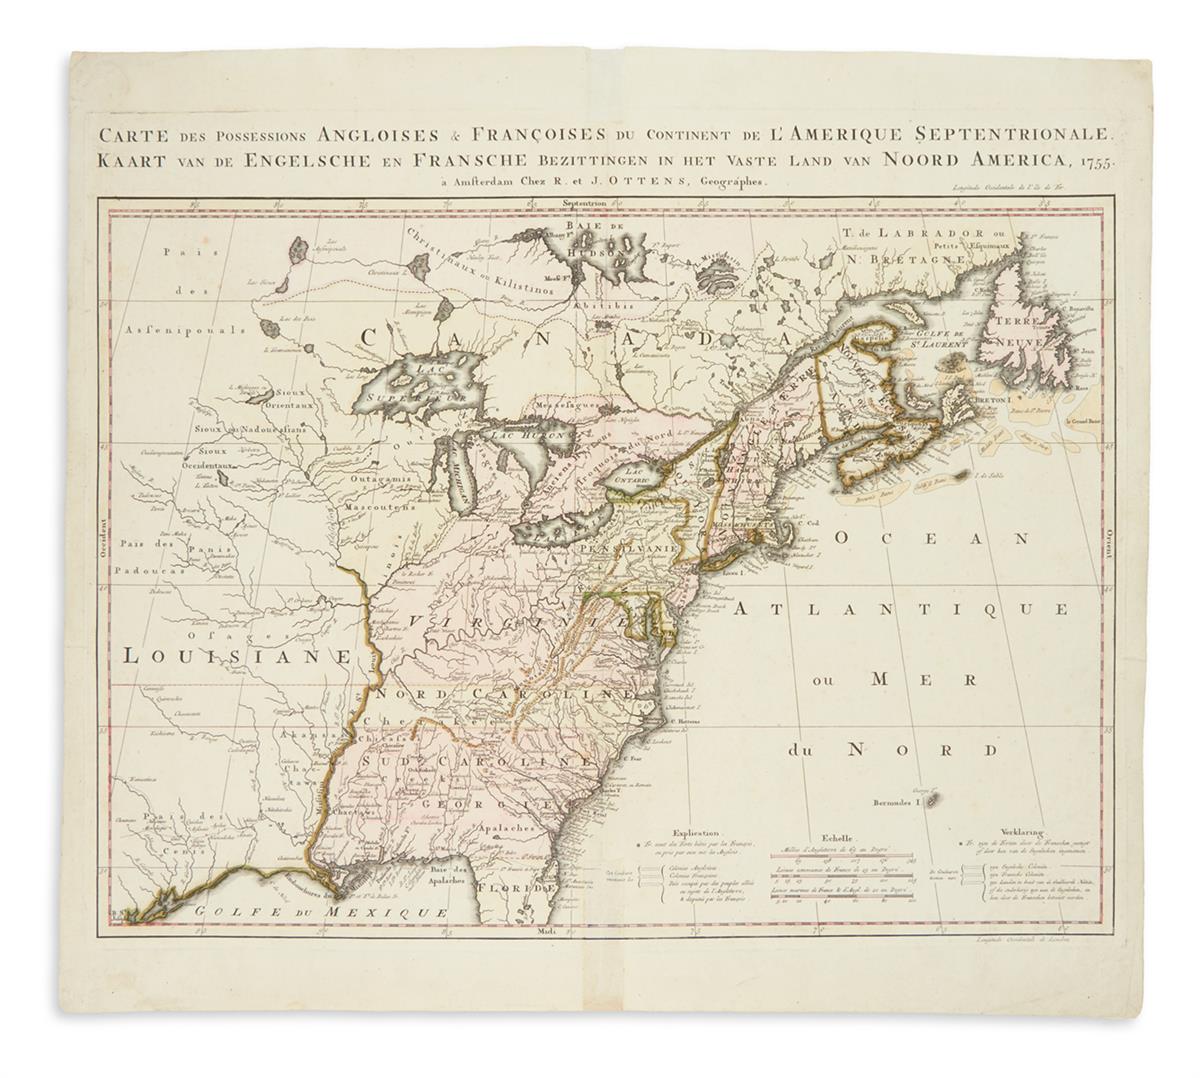 OTTENS, REINIER and JOSUA. Carte des Possessions Angloises & Francoises du Continent de LAmerique Septentrionale.